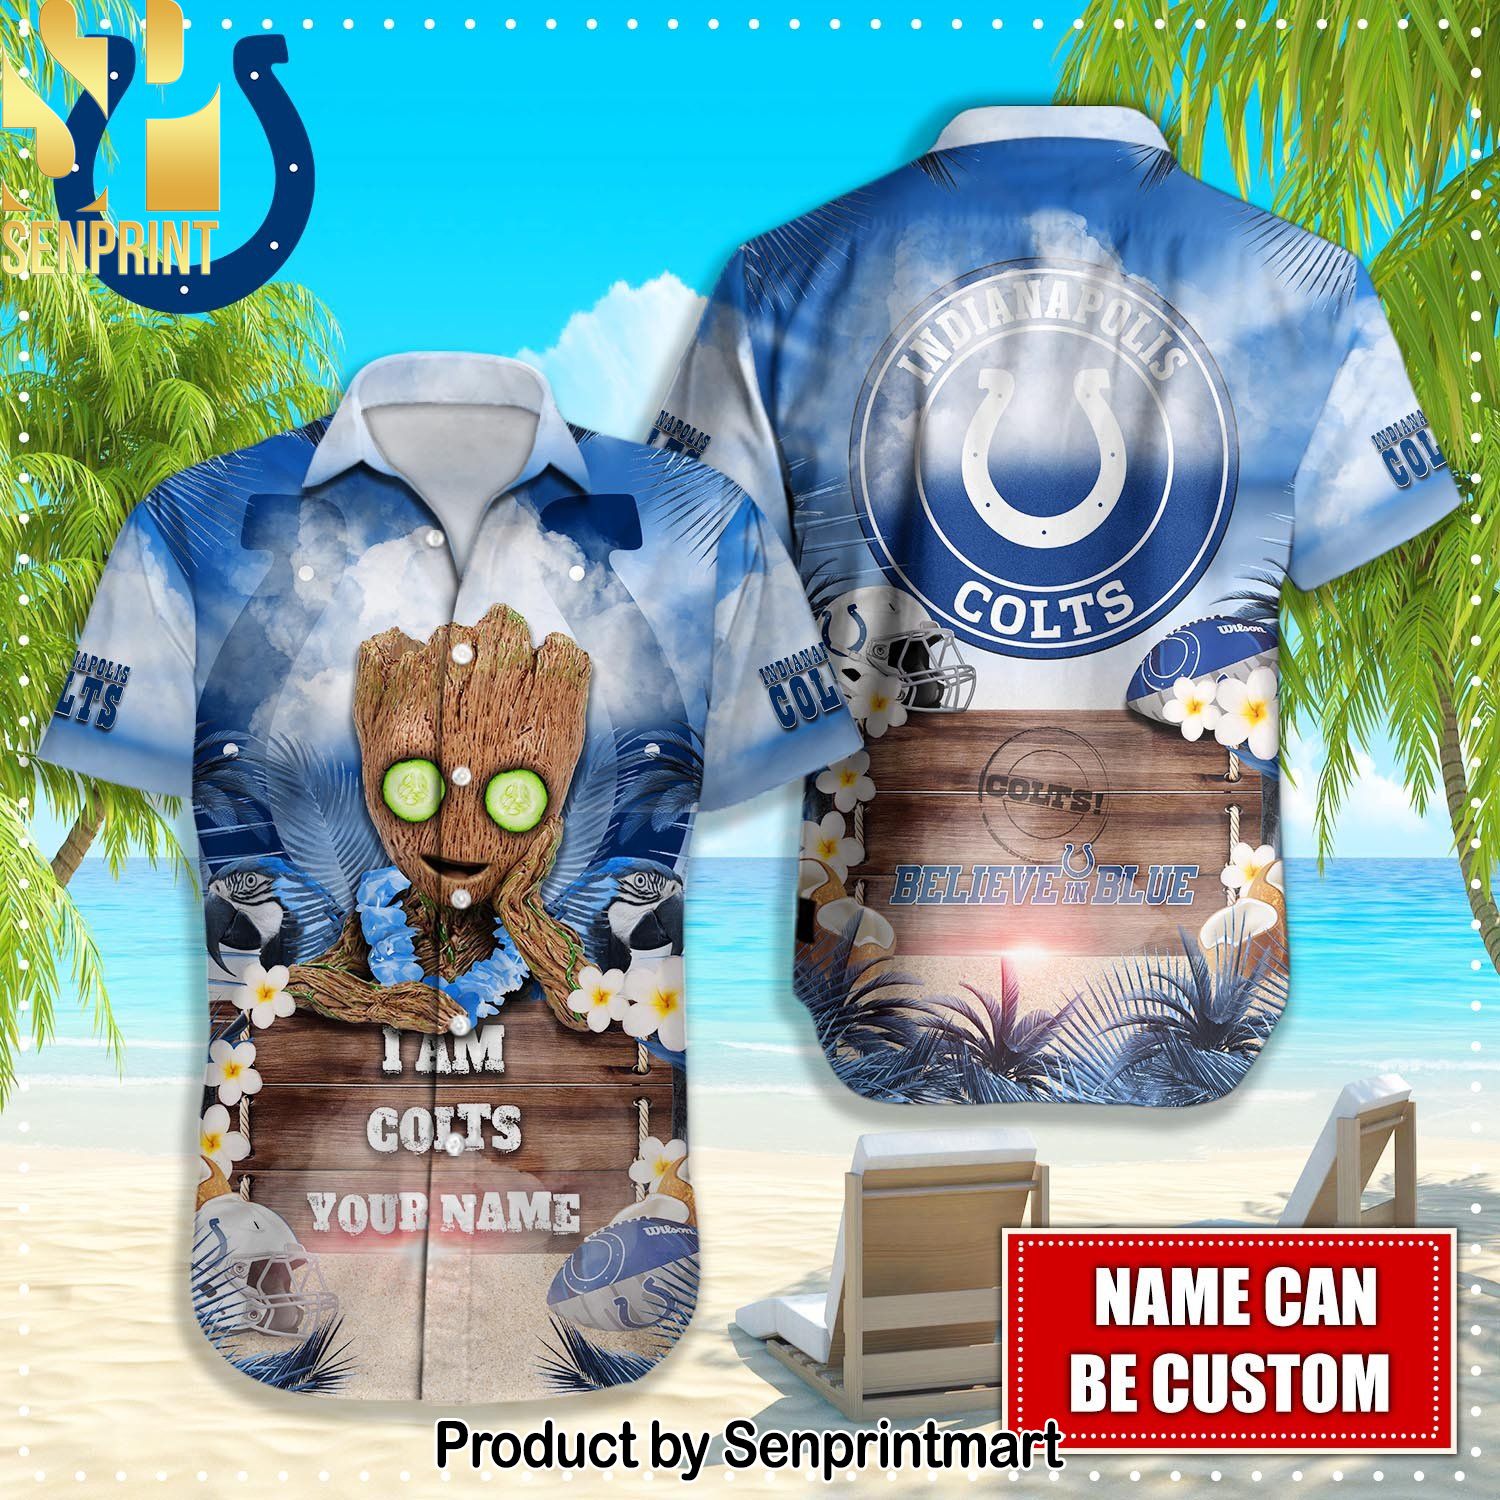 Indianapolis Colts NFL Hot Version All Over Printed Hawaiian Shirt and Shorts